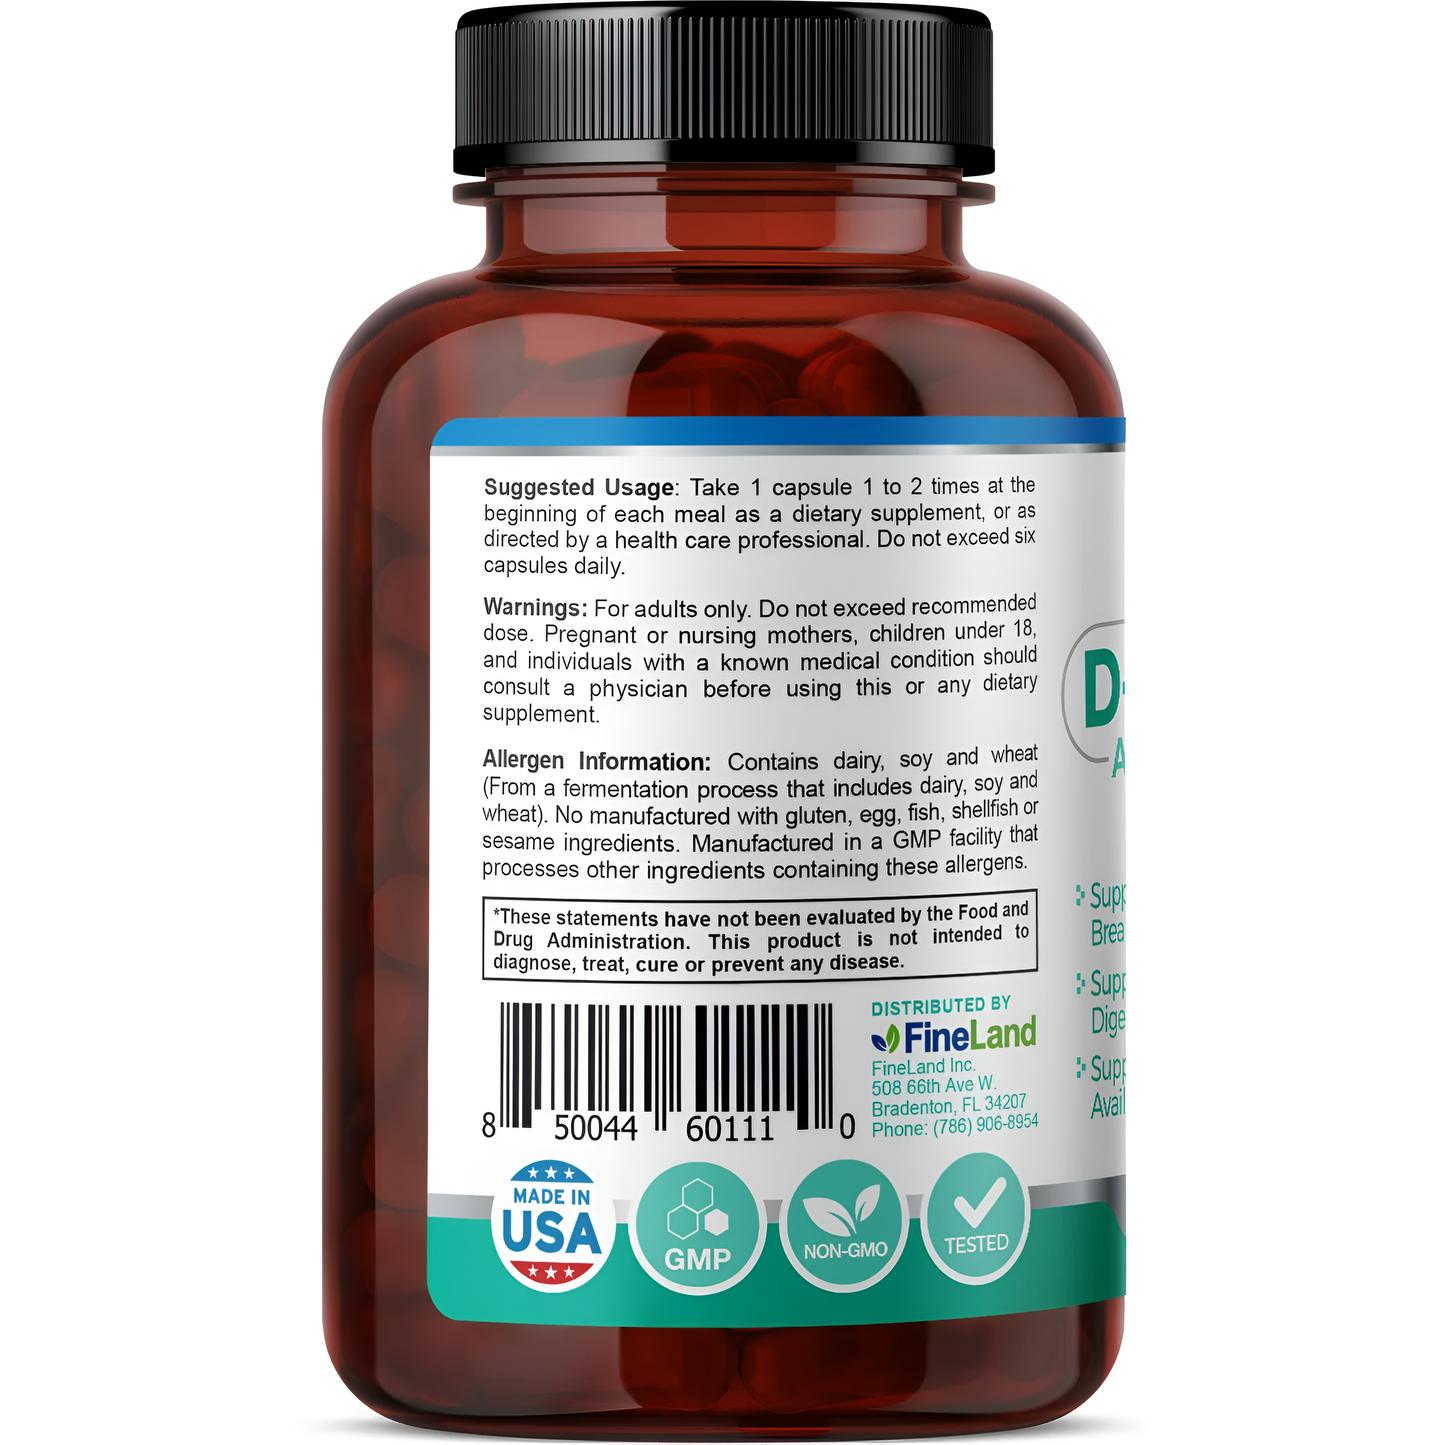 D-Enzymes Fineland 60 capsulas Complejo de Apoyo Digestivo Avanzado